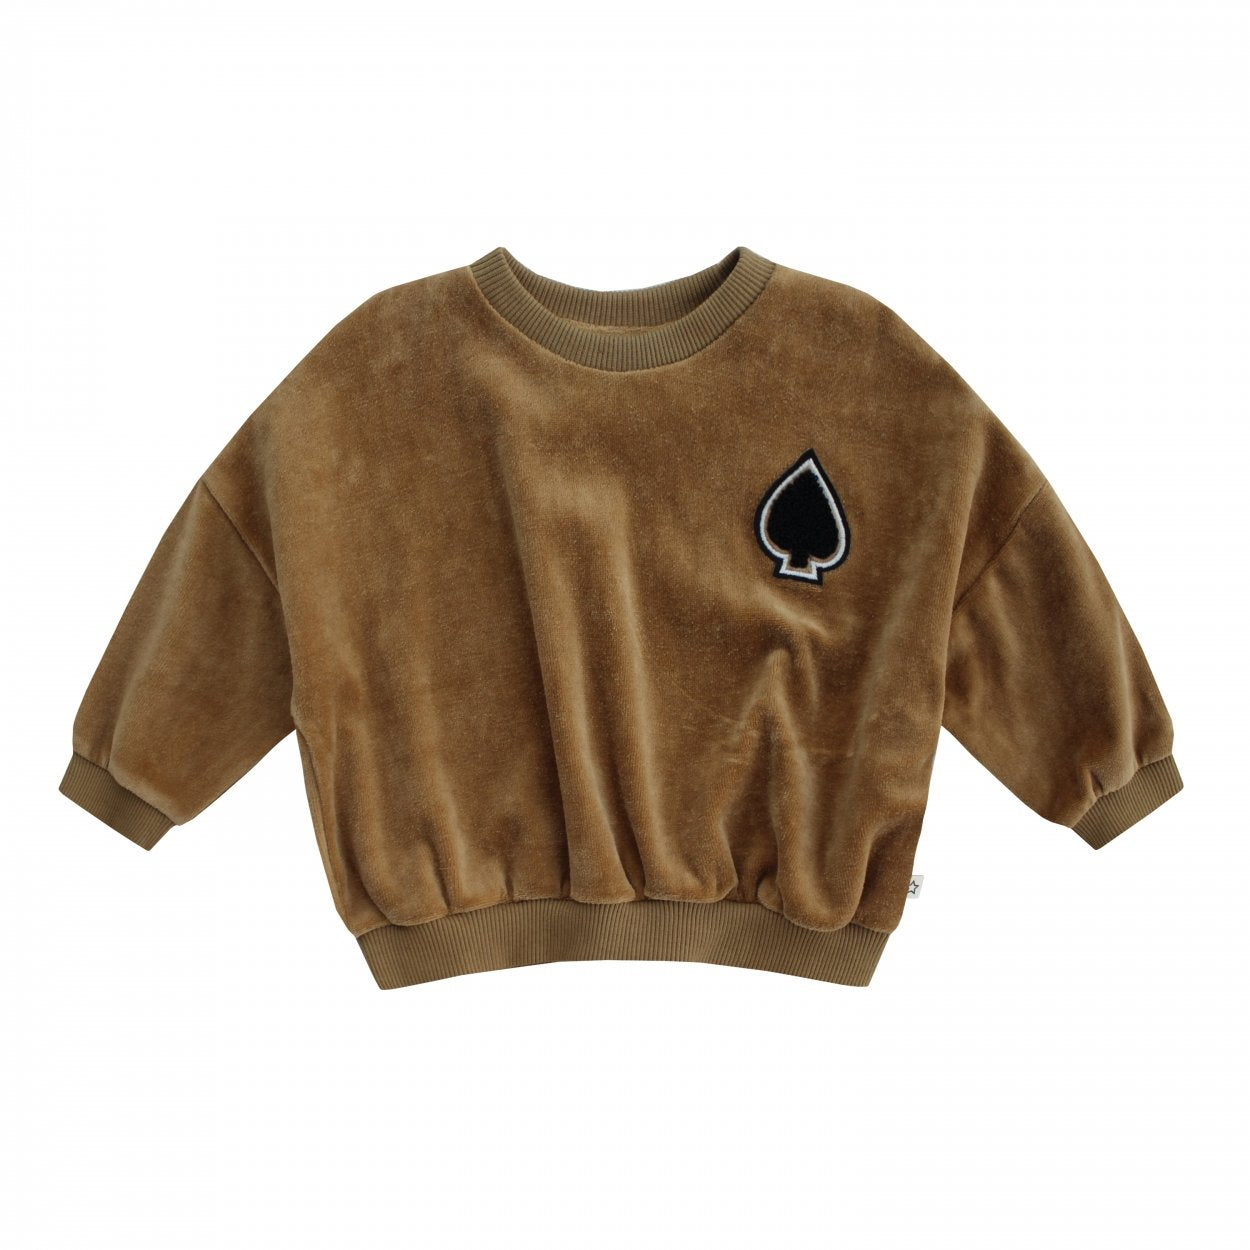 Jongens Sweater Spotlight - Nio van Your Wishes in de kleur Golden in maat 86/92.